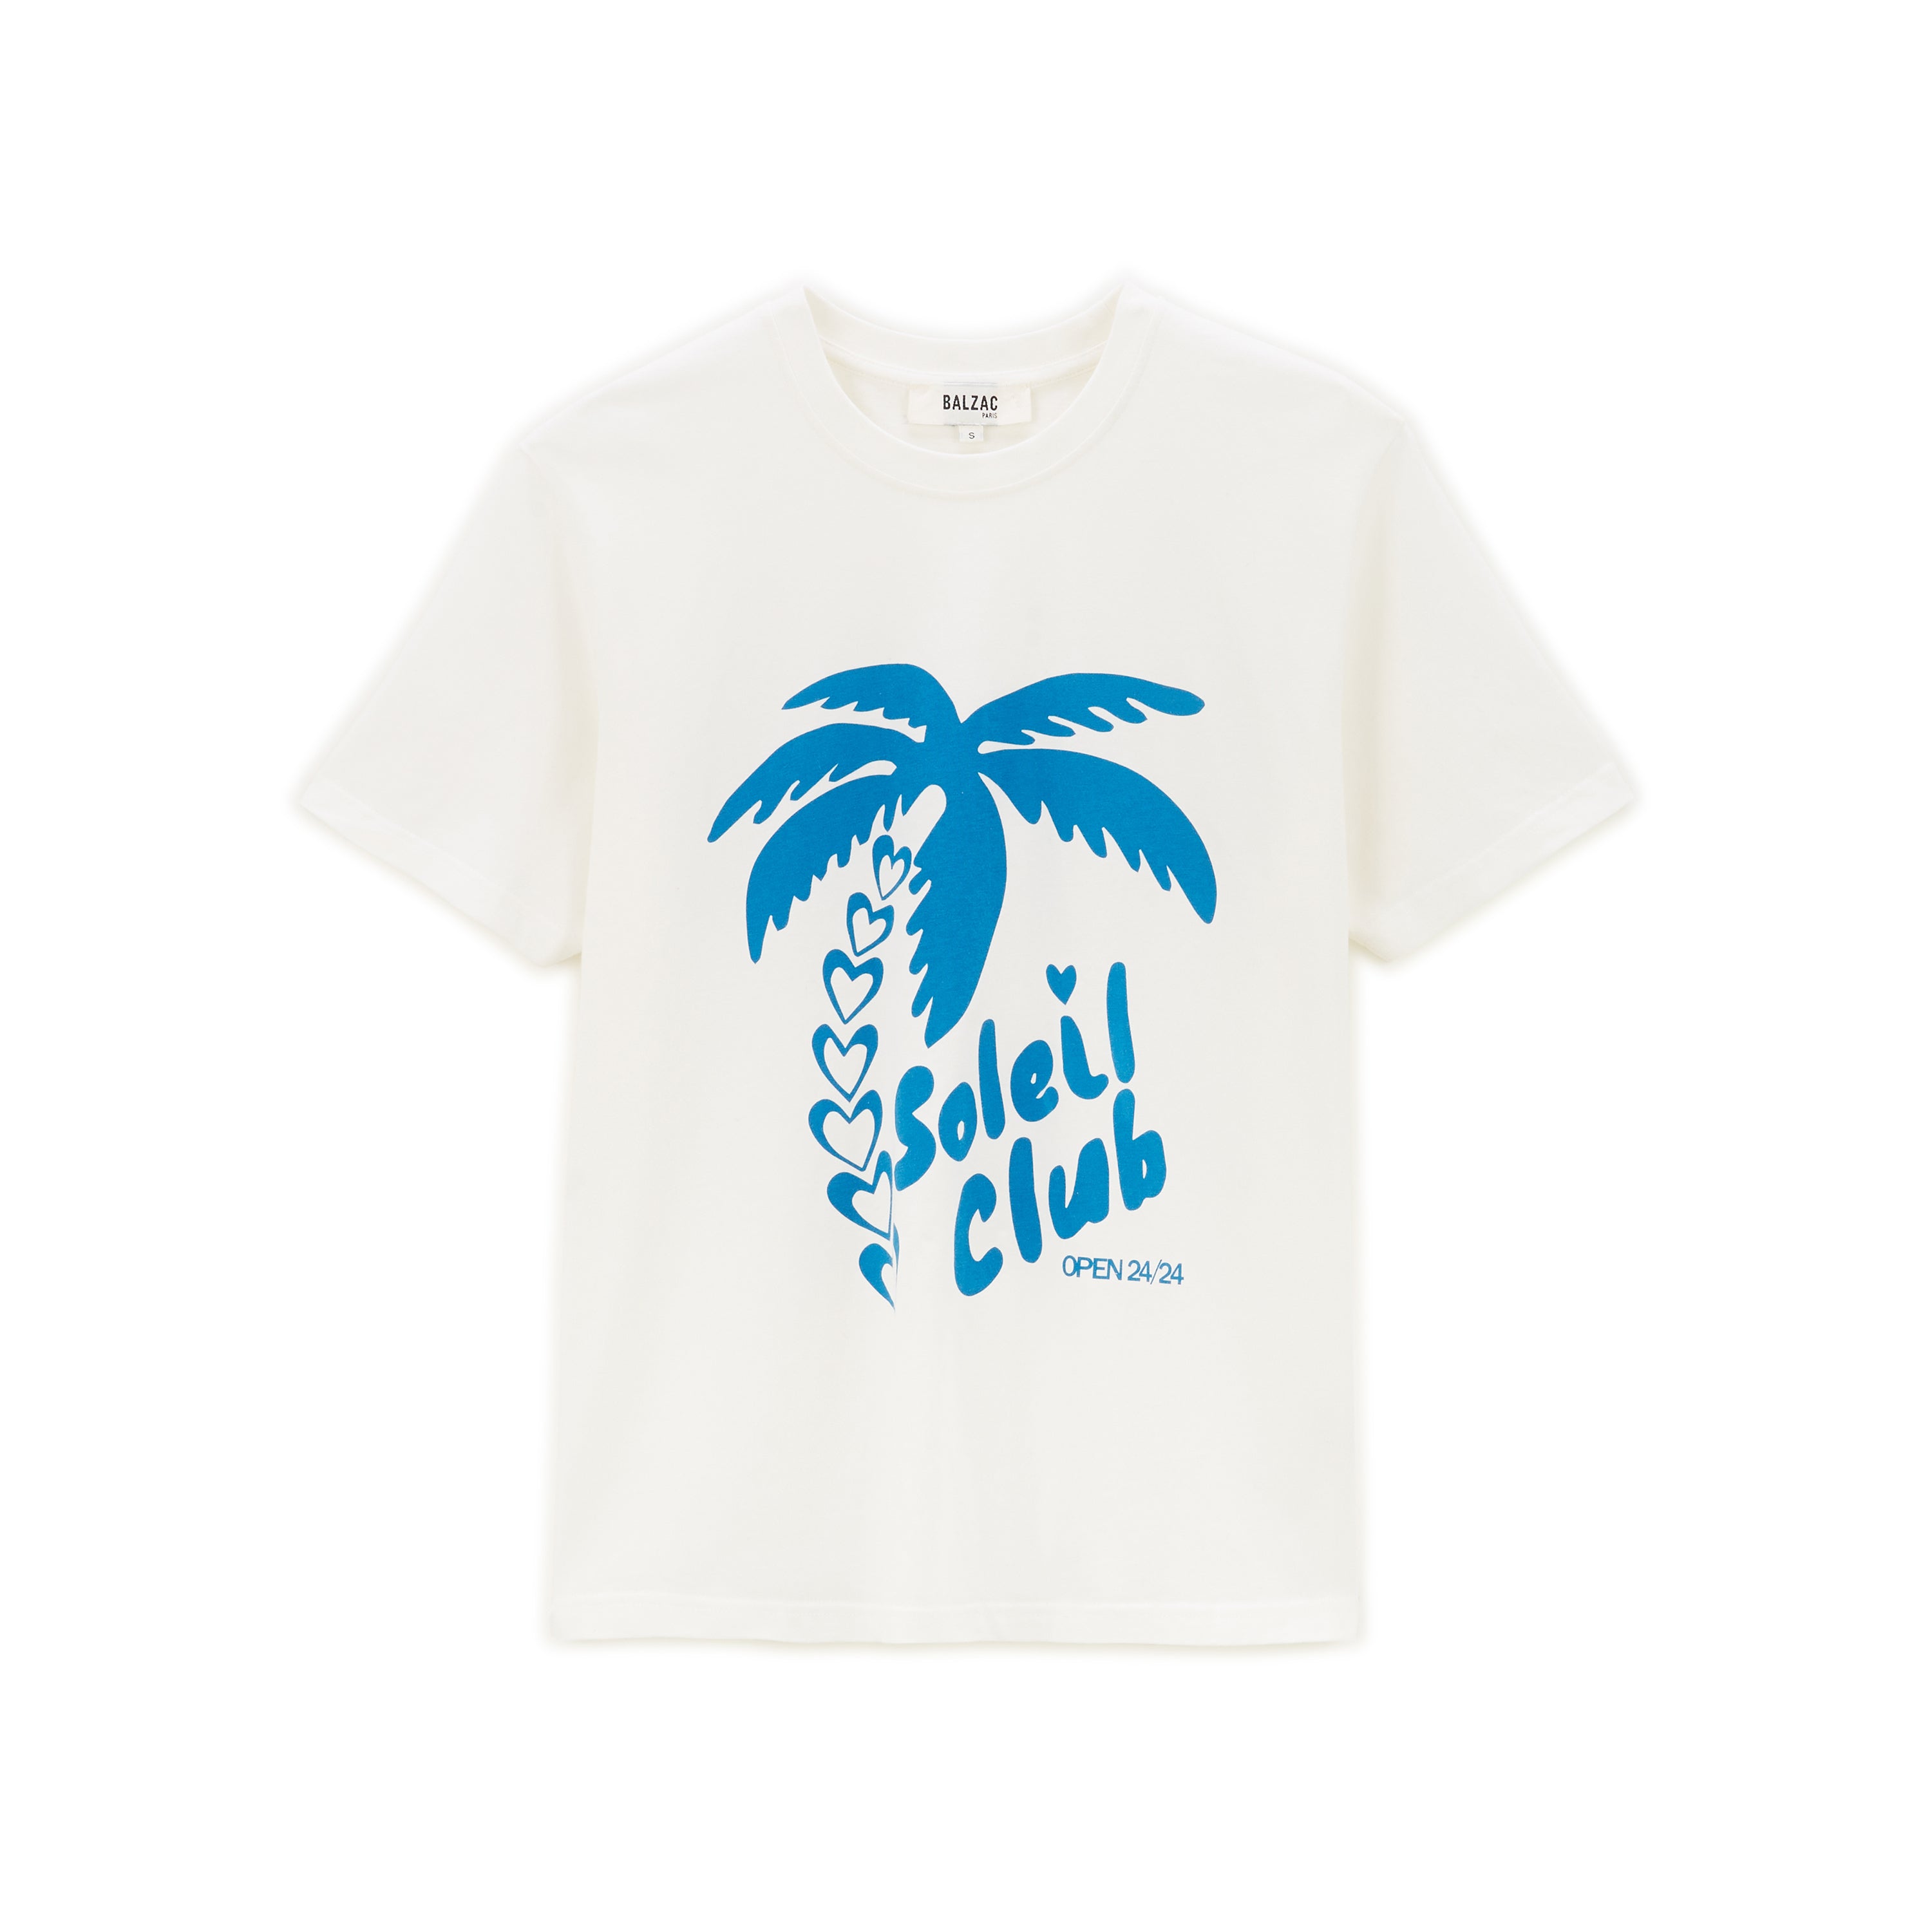 Blue and white Bree Soleil Club t-shirt